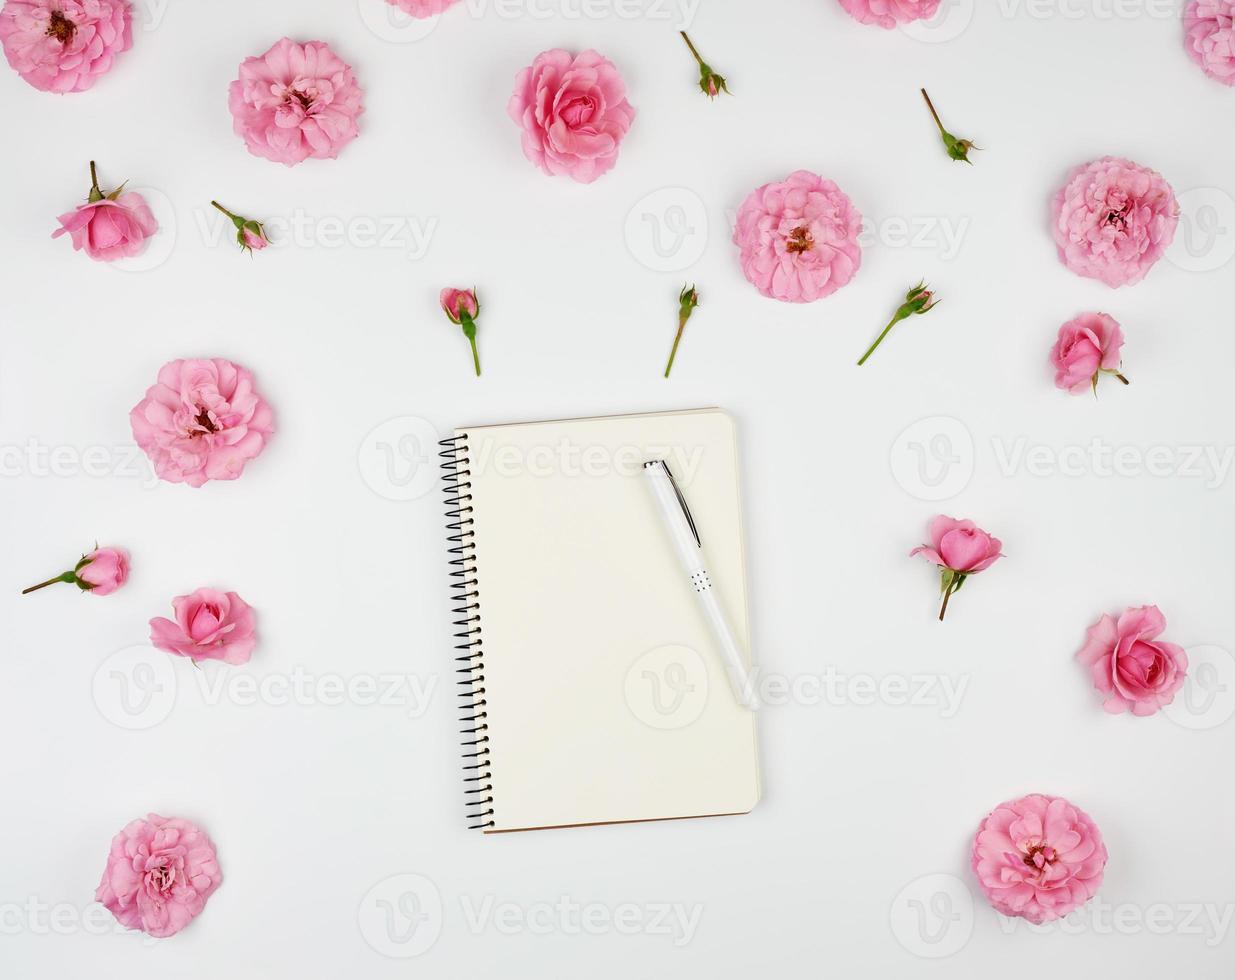 cuaderno con páginas en blanco blancas foto